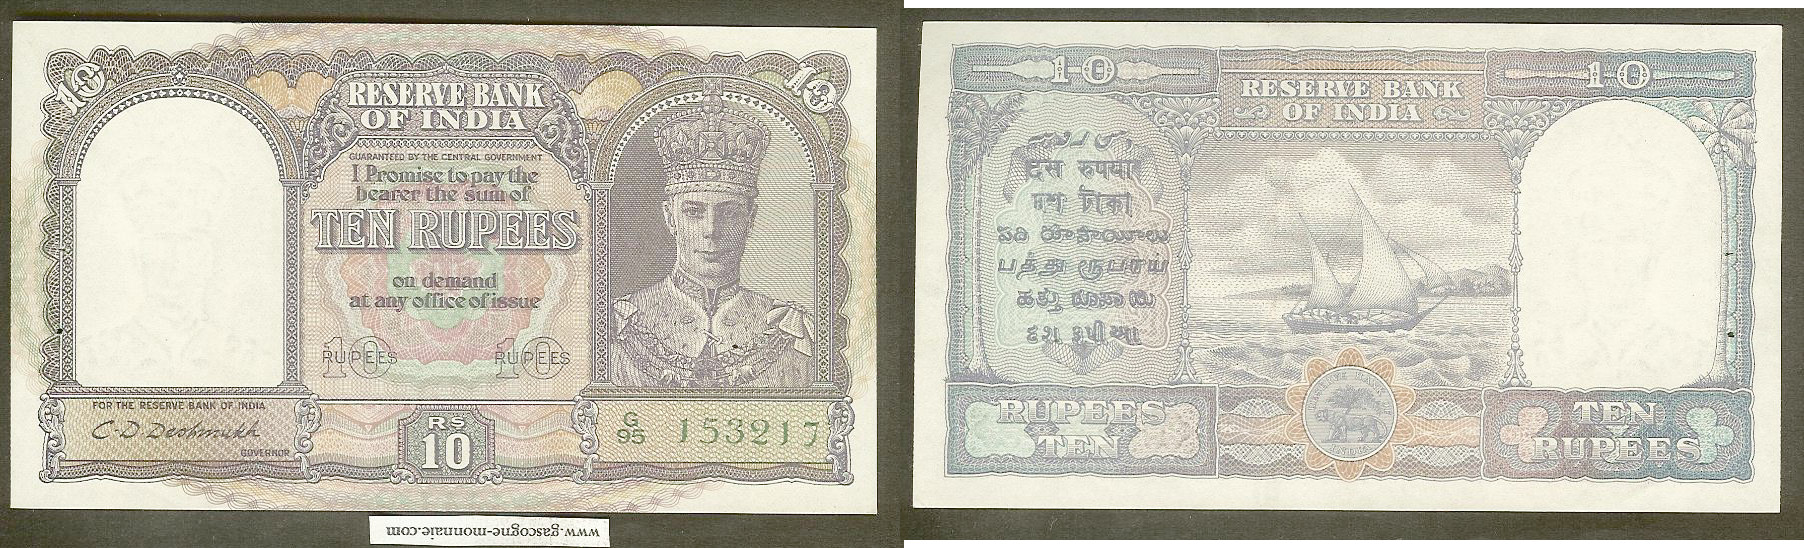 India 10 rupees 1943 Unc